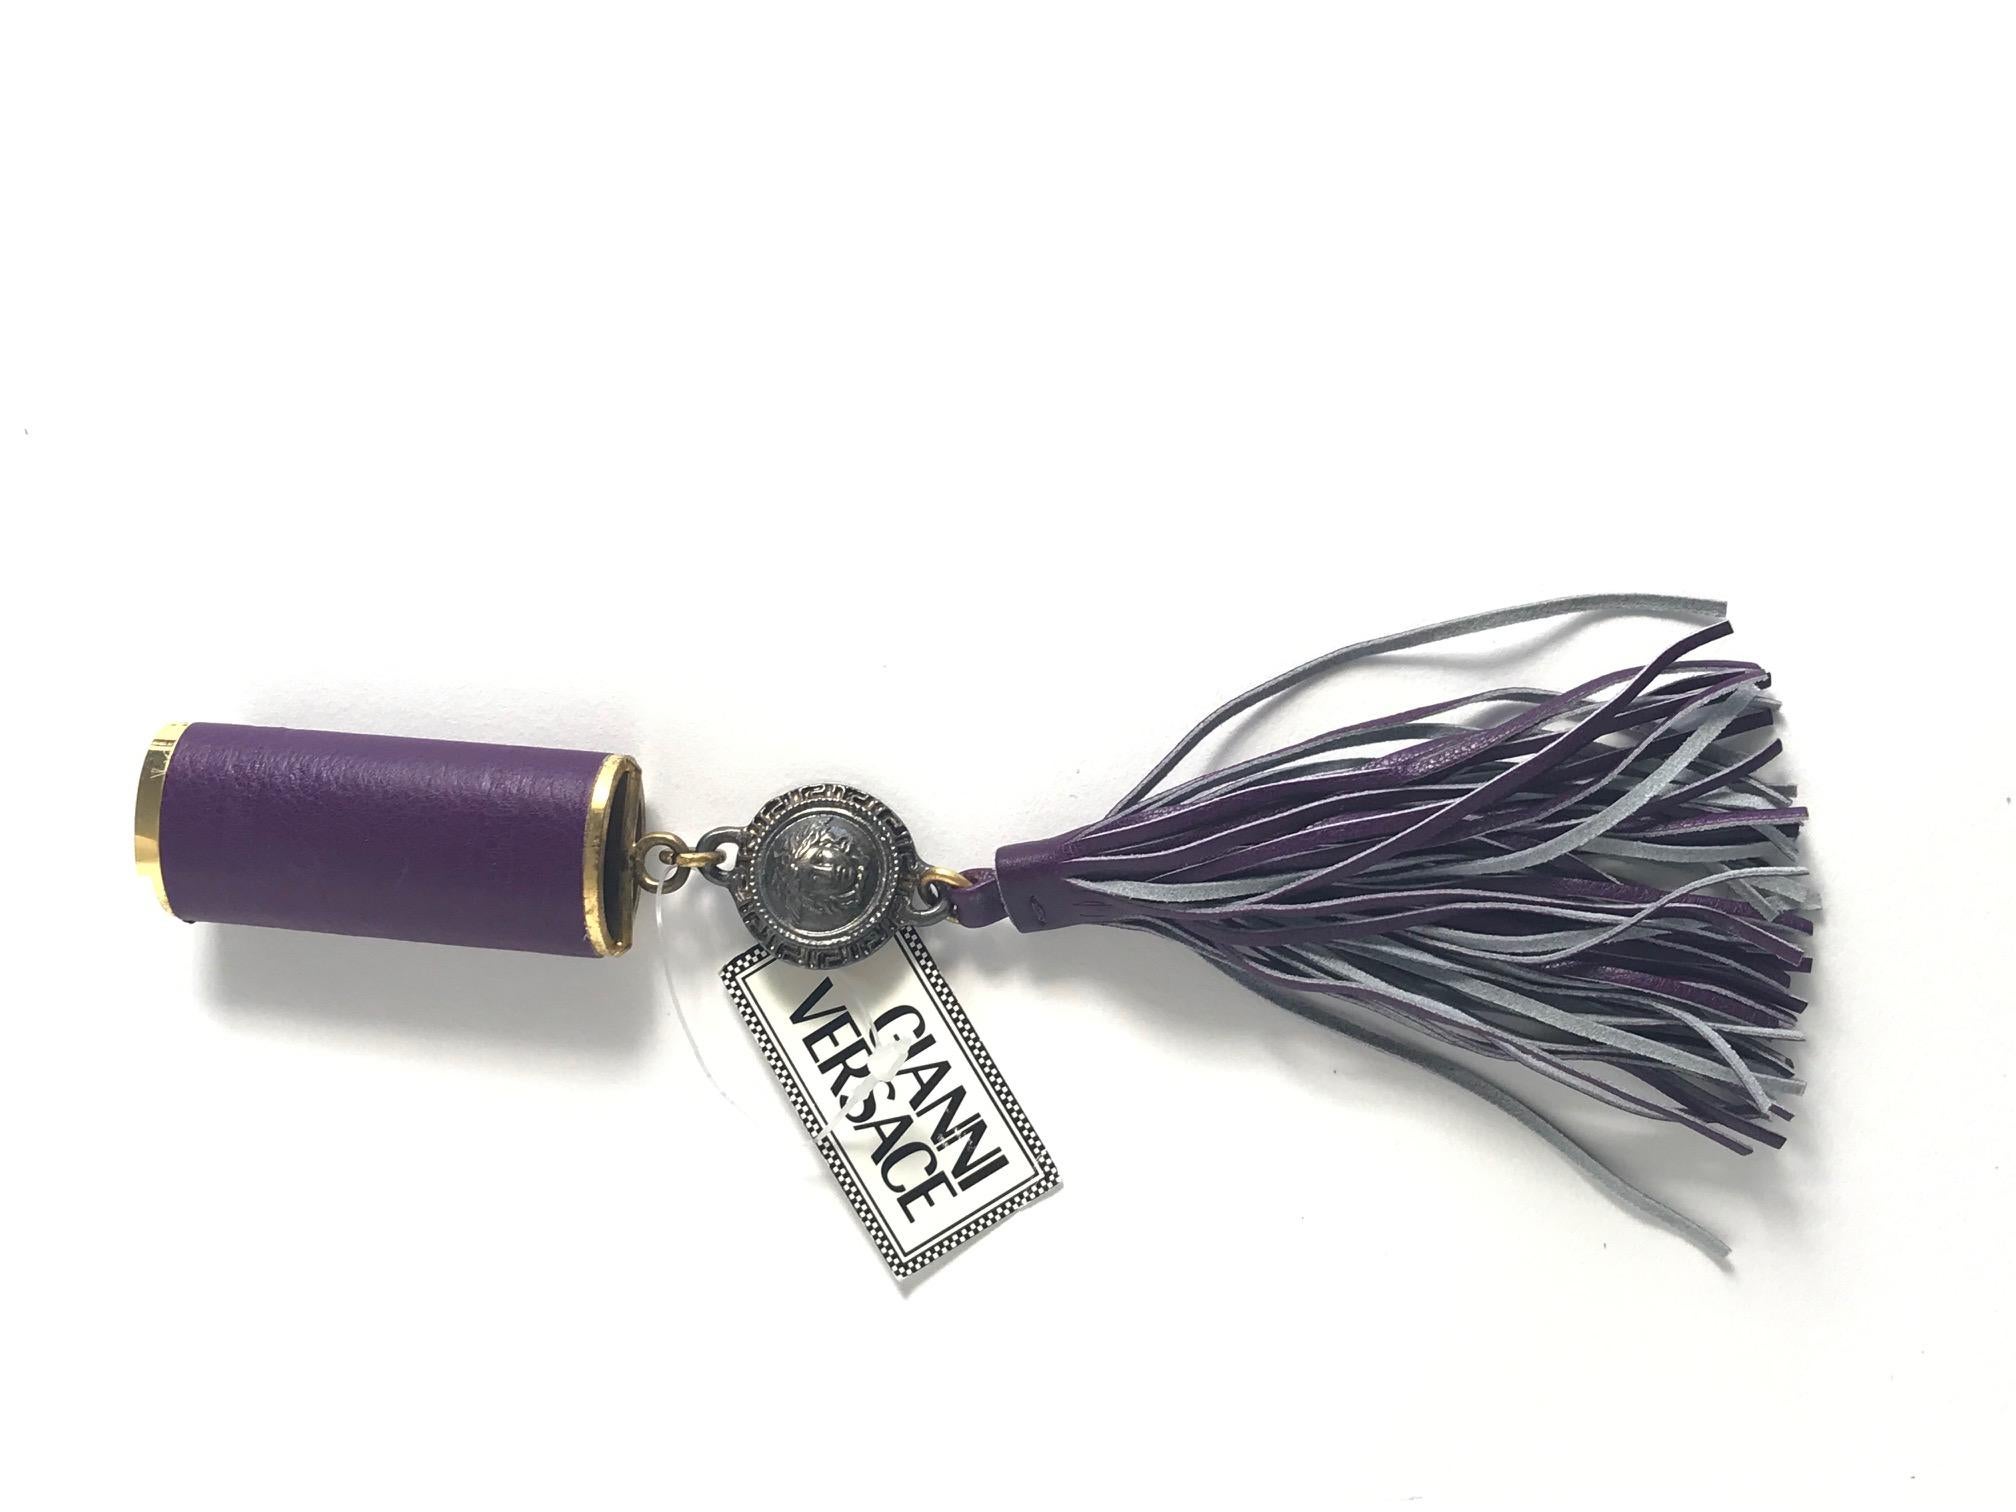 1990s Gianni Versace purple leather fringe lighter holder. Fits regular bic lighter. Condition: Excellent